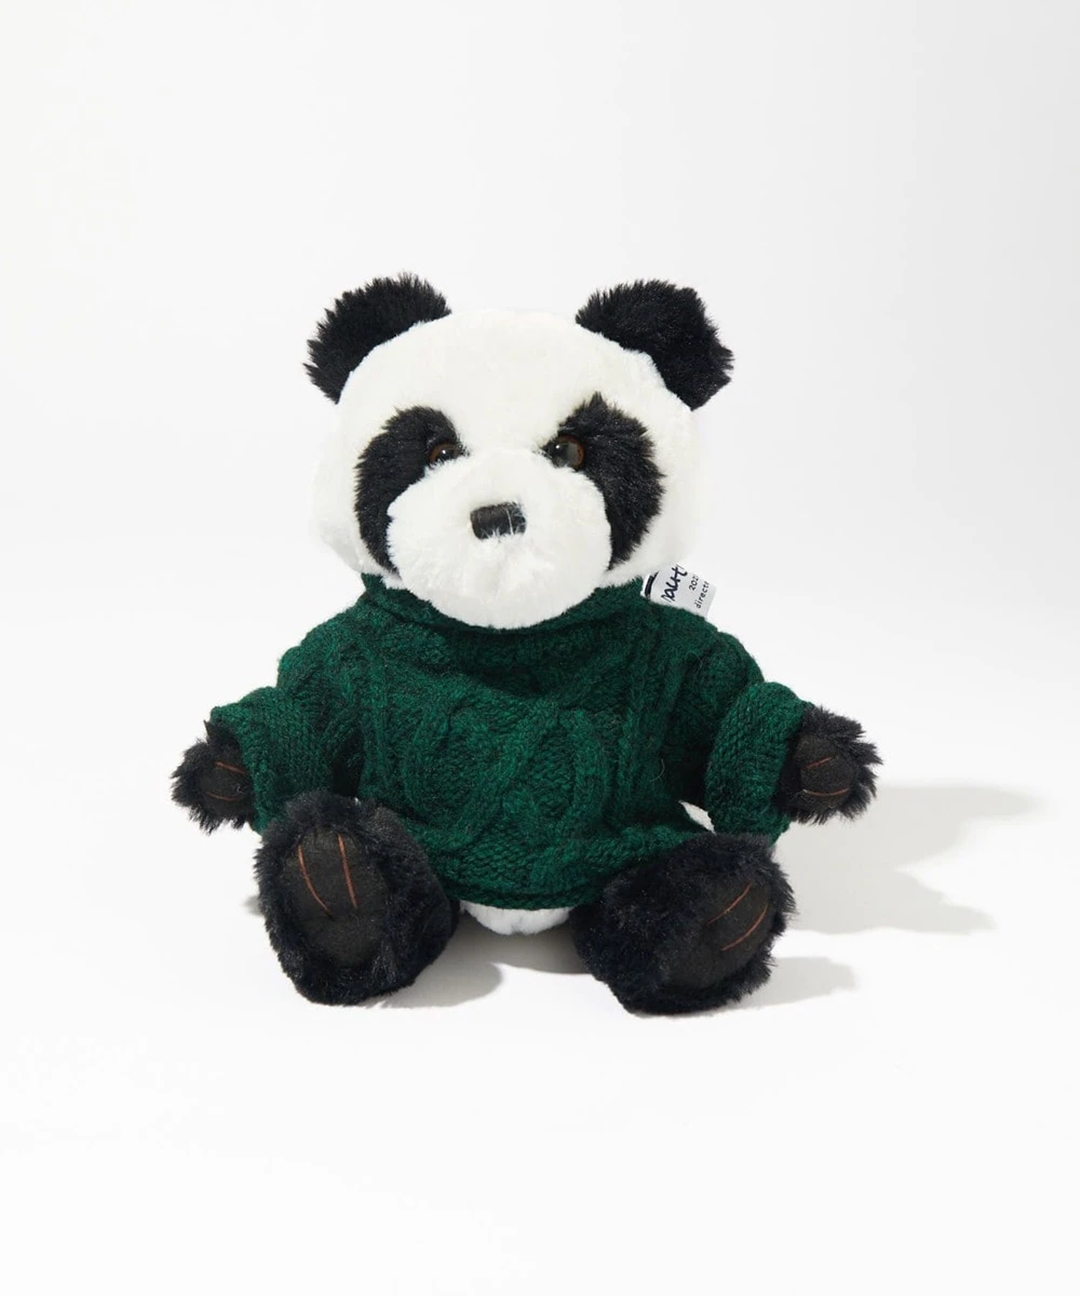 ファッションディレクターの長谷川昭雄氏のディレクション「NAUTICA/ノーティカ」からノベルティとして制作したパンダのぬいぐるみが発売！